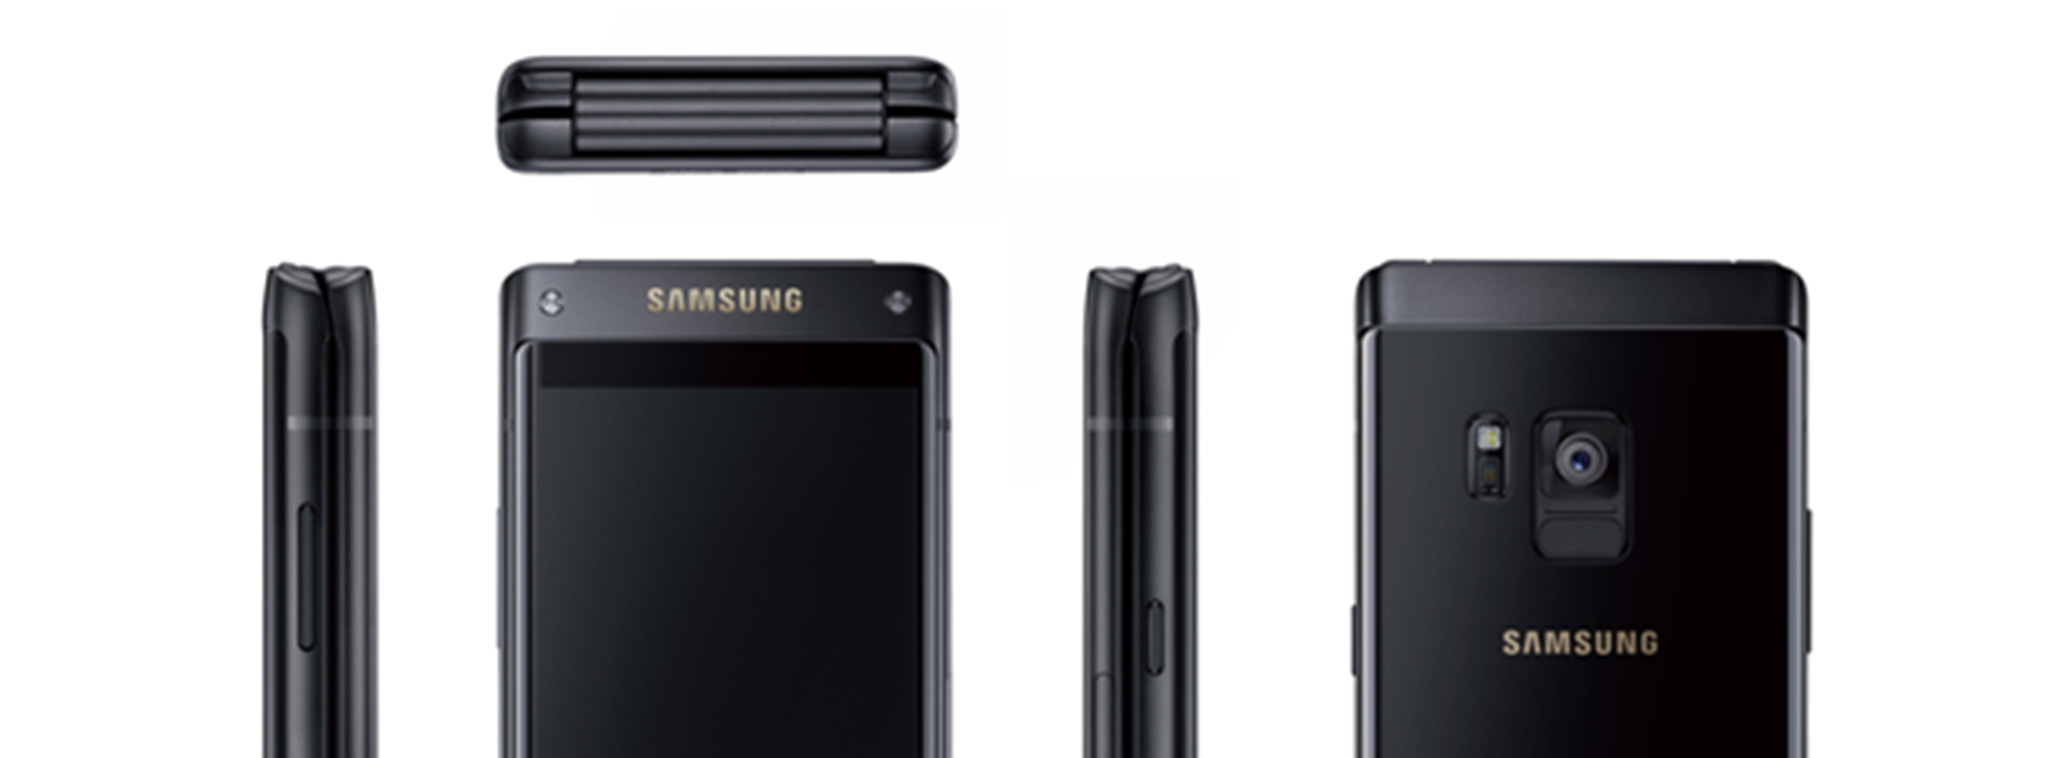 Xuất hiện hình ảnh điện thoại gập của Samsung: màn hình ngoài viền mỏng như S8, 4,2-inch 1080p?